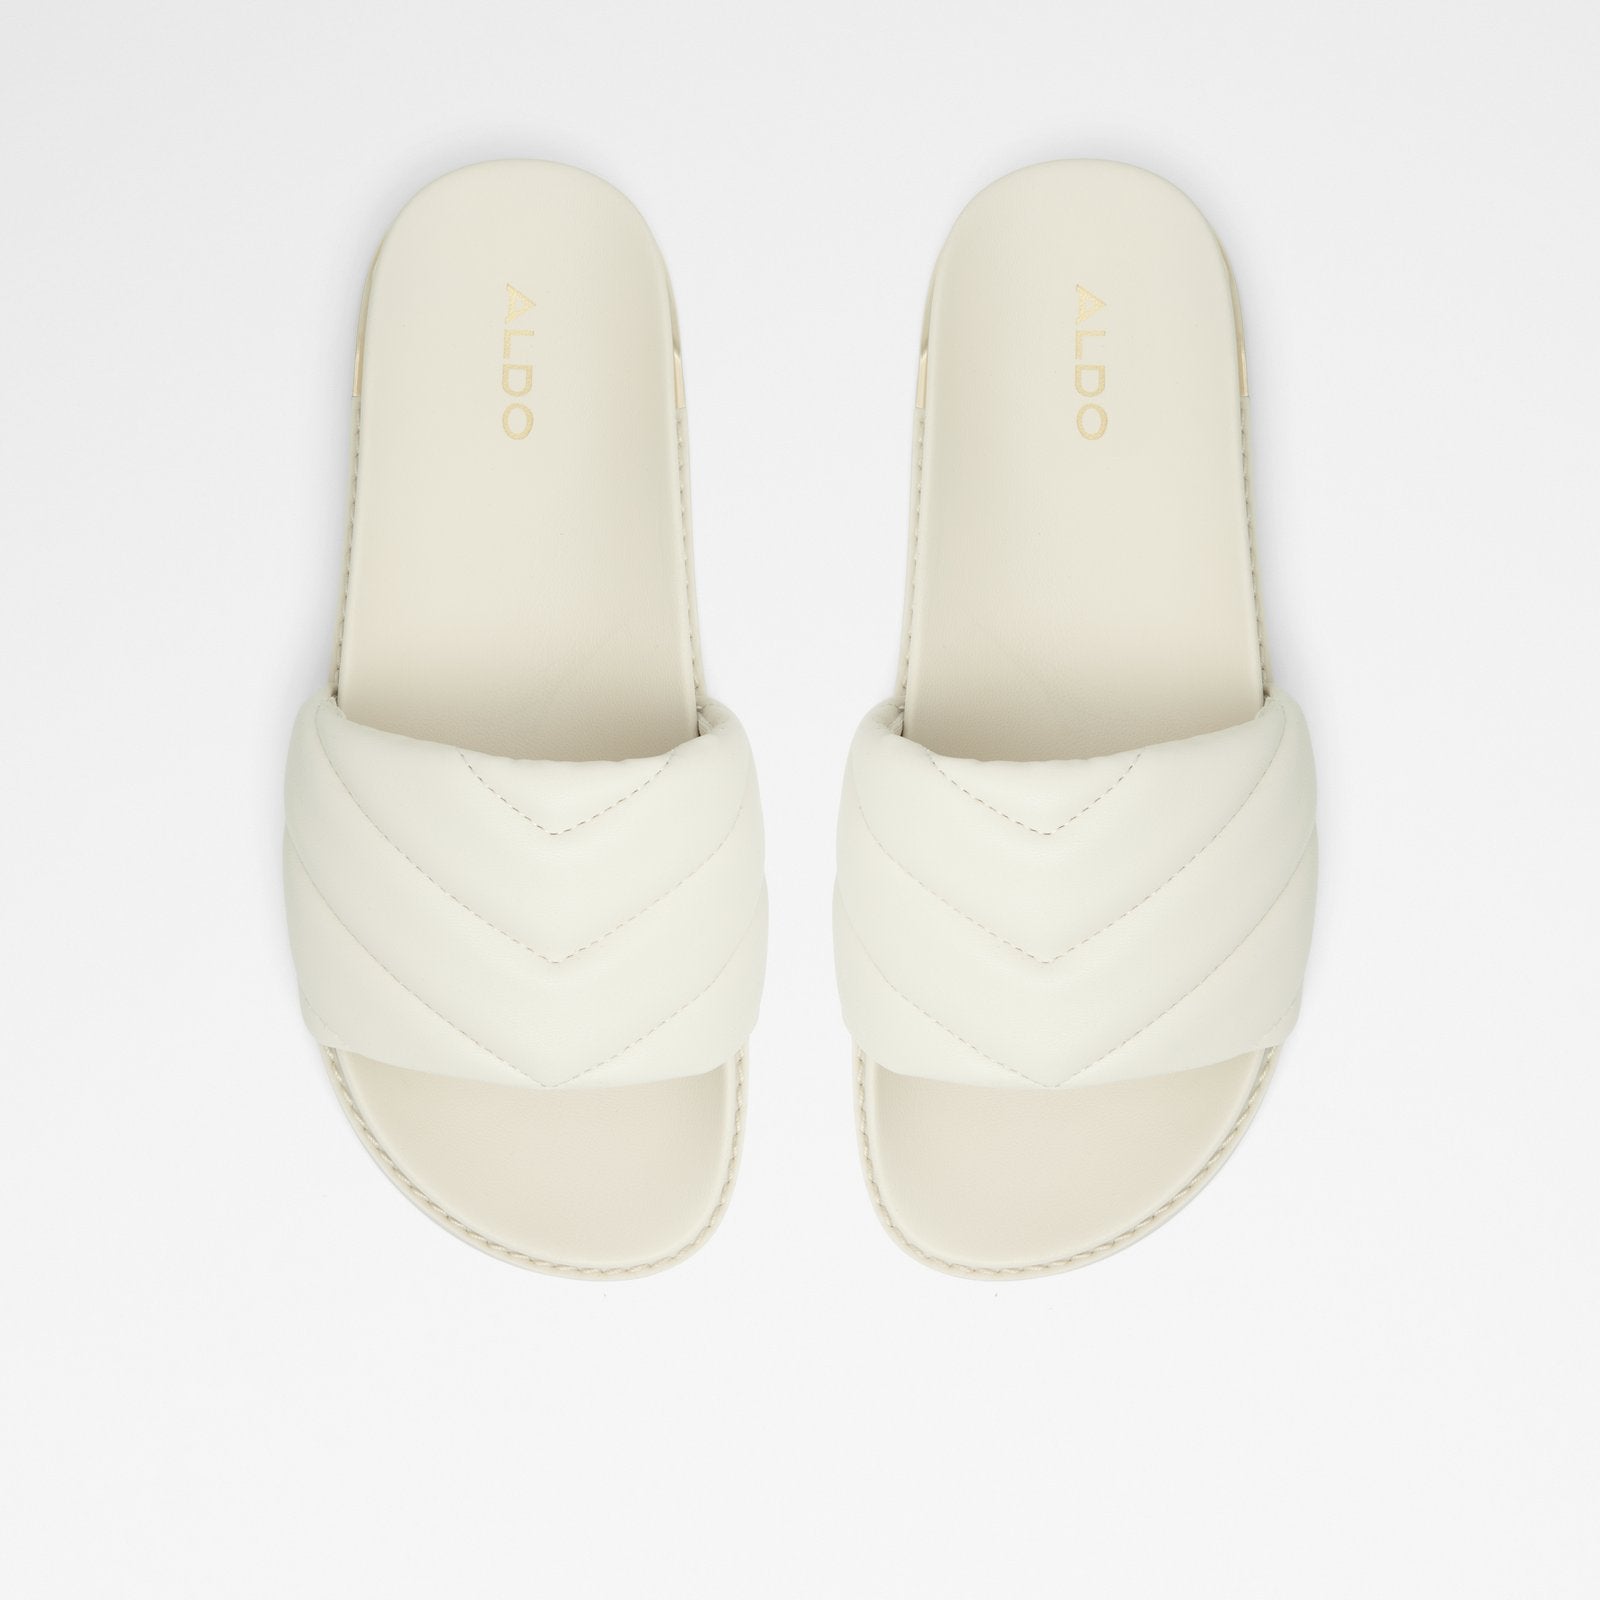 Acaswen Women Shoes - White - ALDO KSA